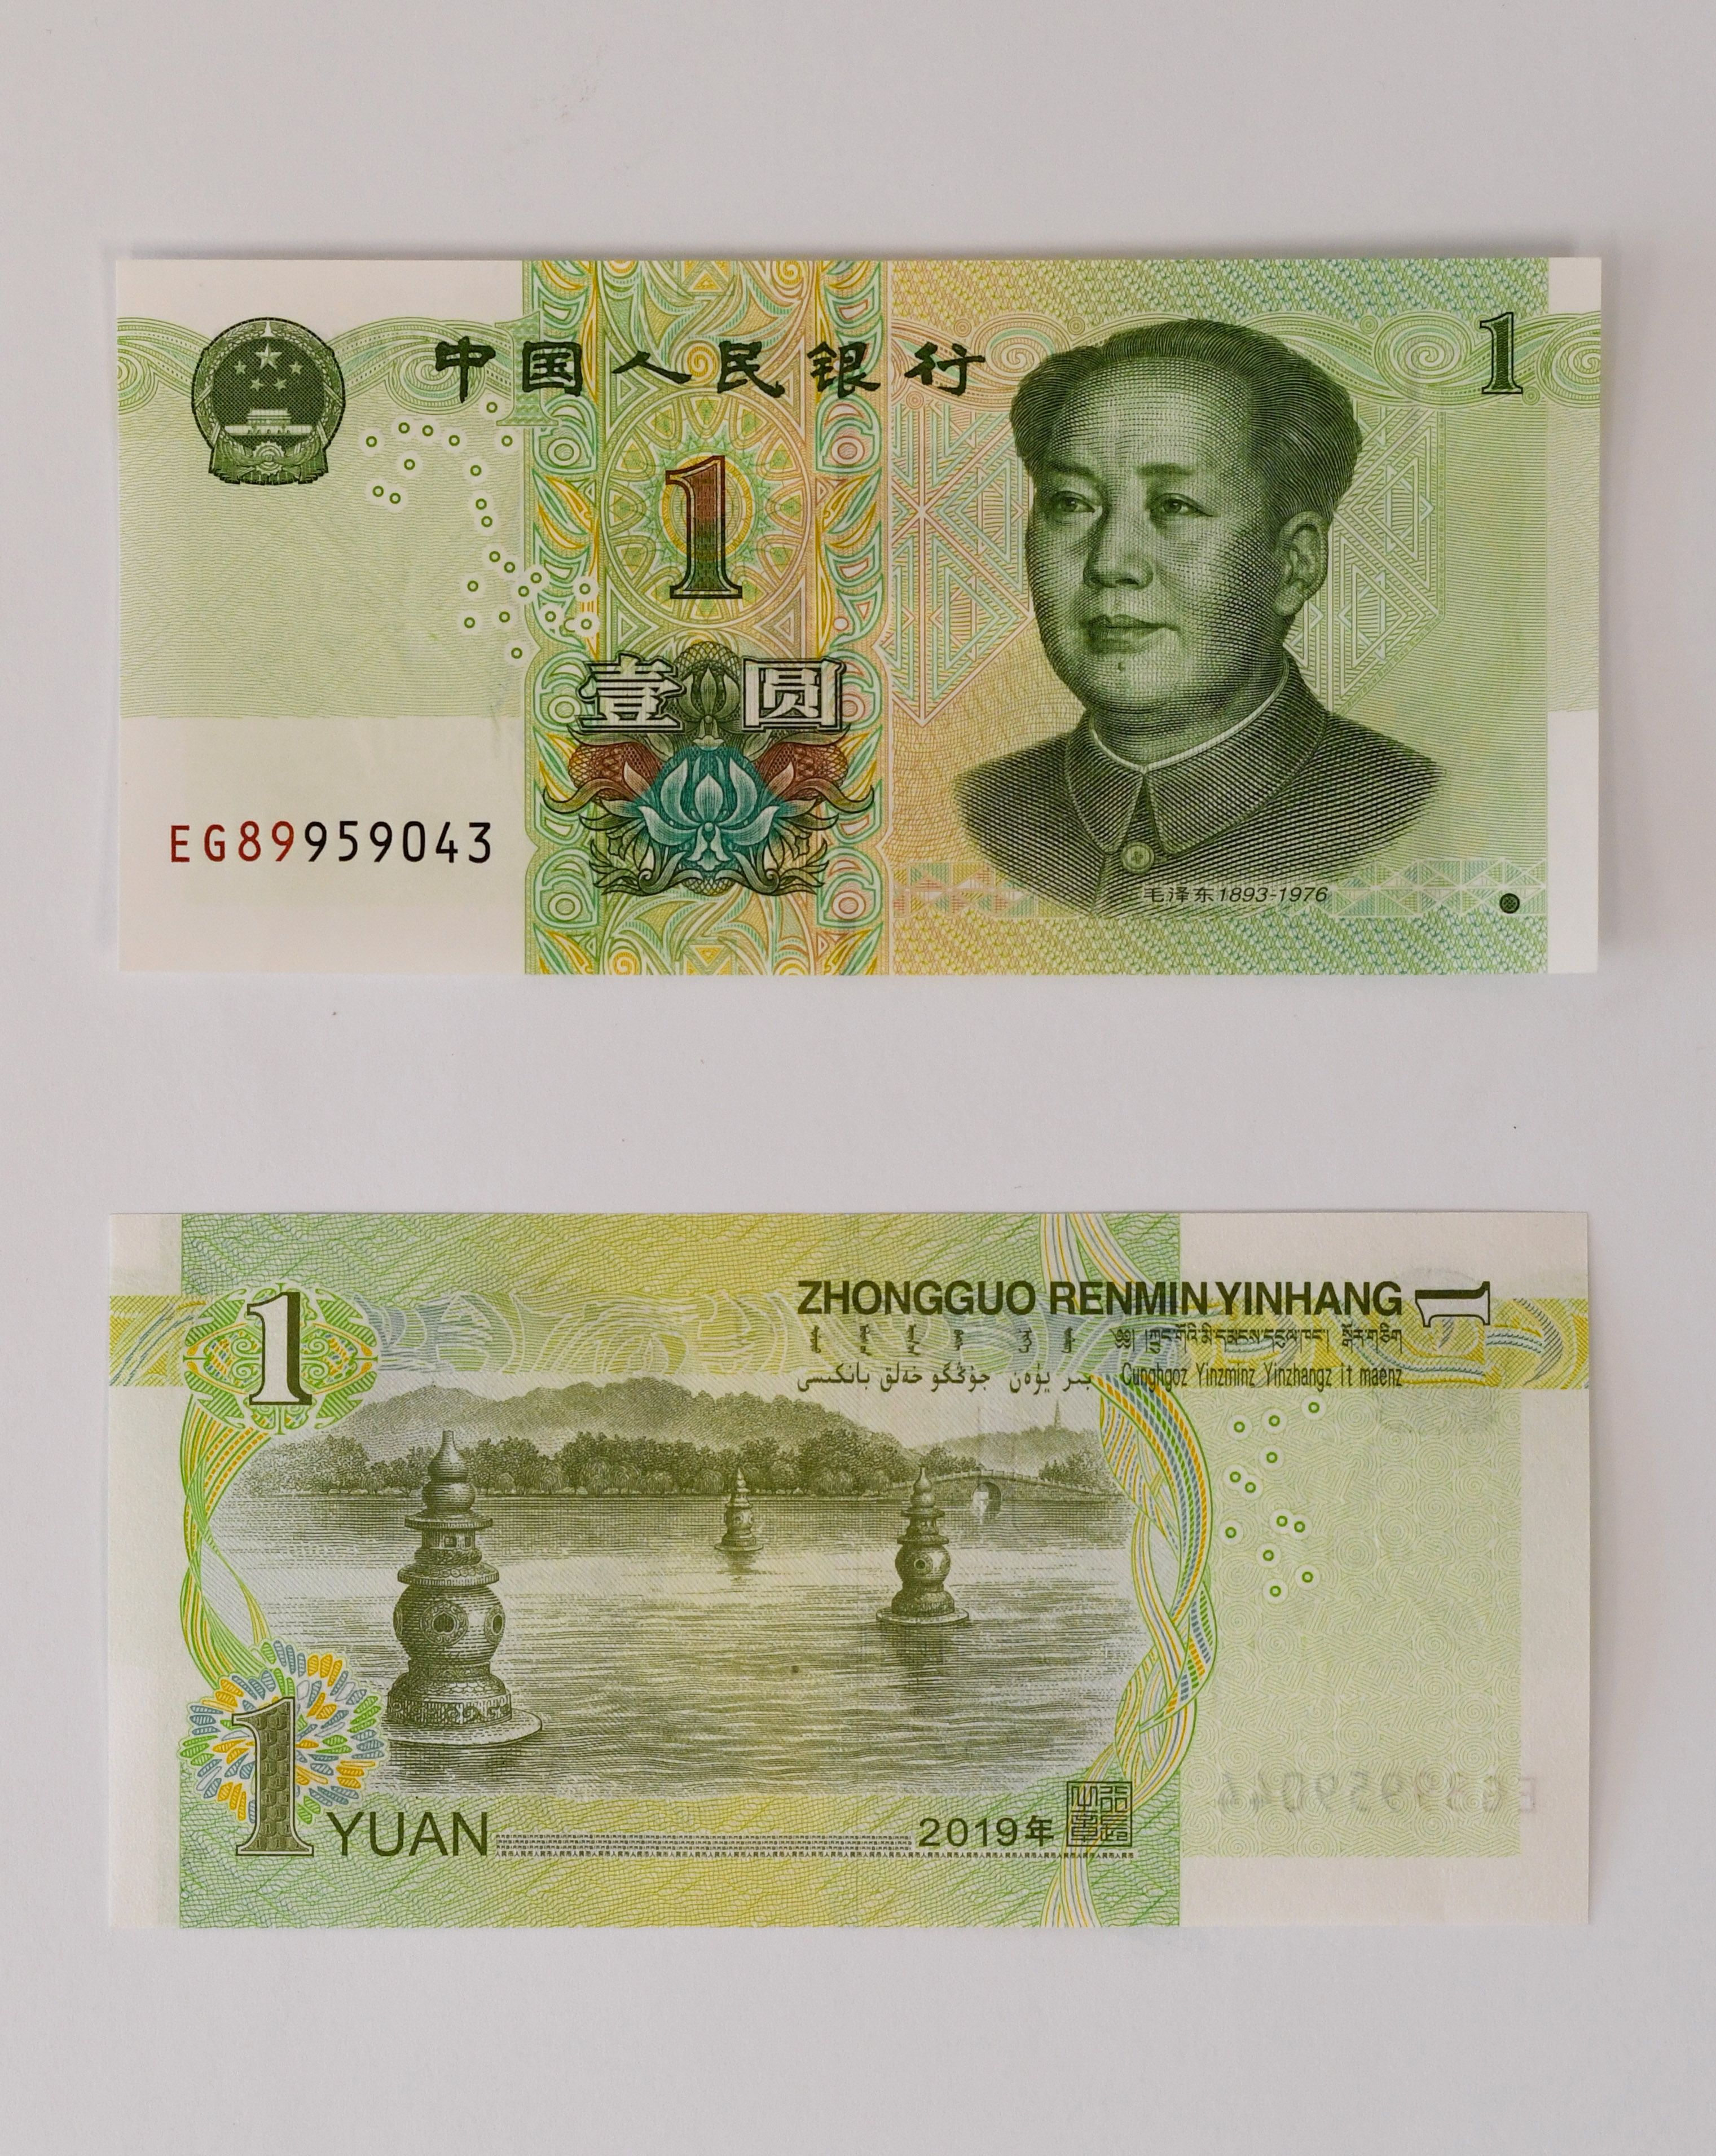 2019年版第五套人民币1元纸币正反面(8月30日摄).